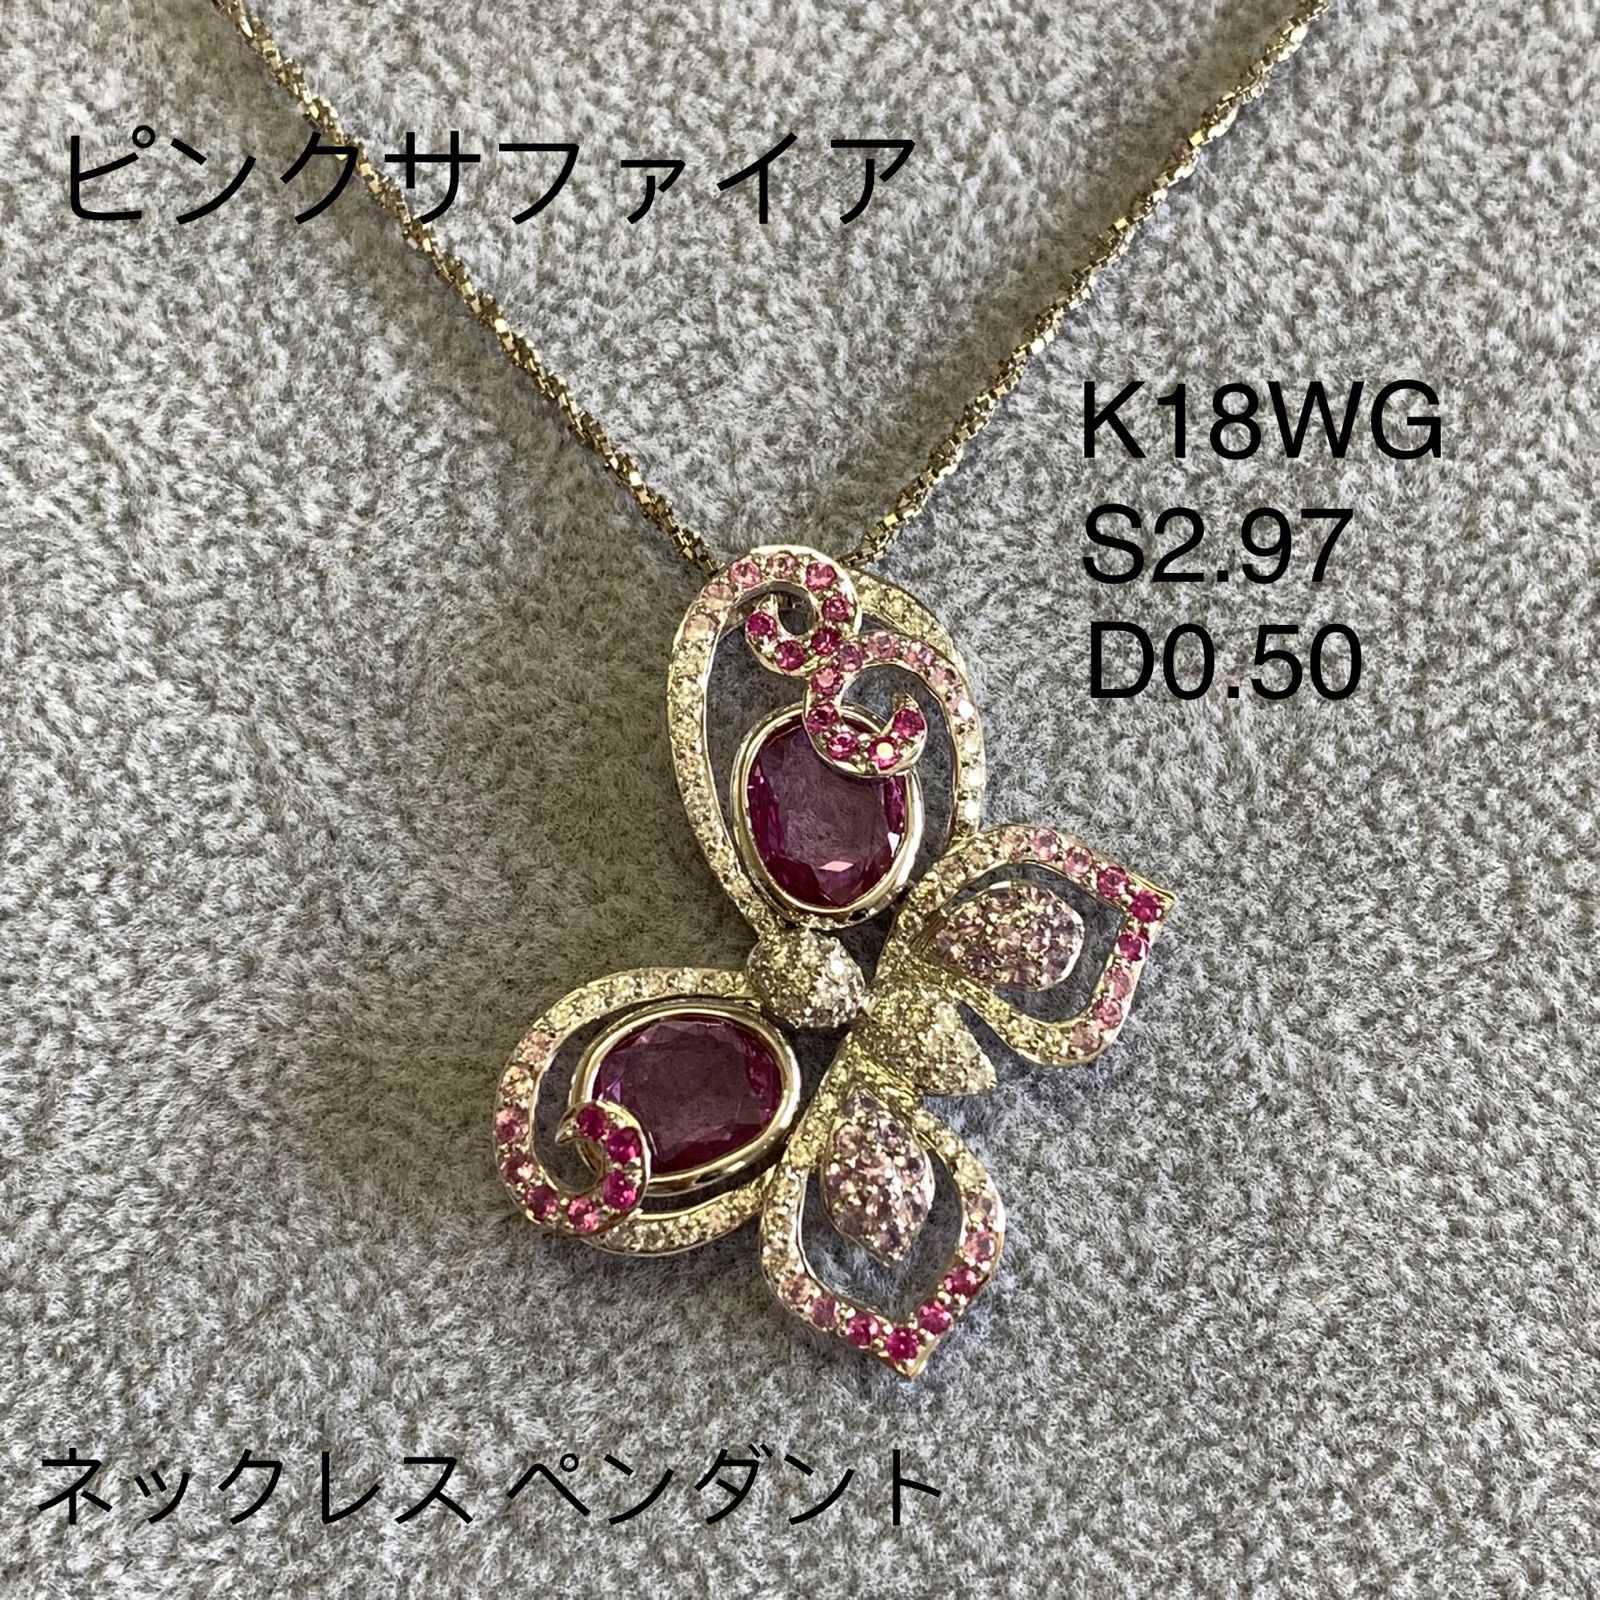 K18WG ピンクサファイア・ルビー・ダイヤモンド ネックレス (花